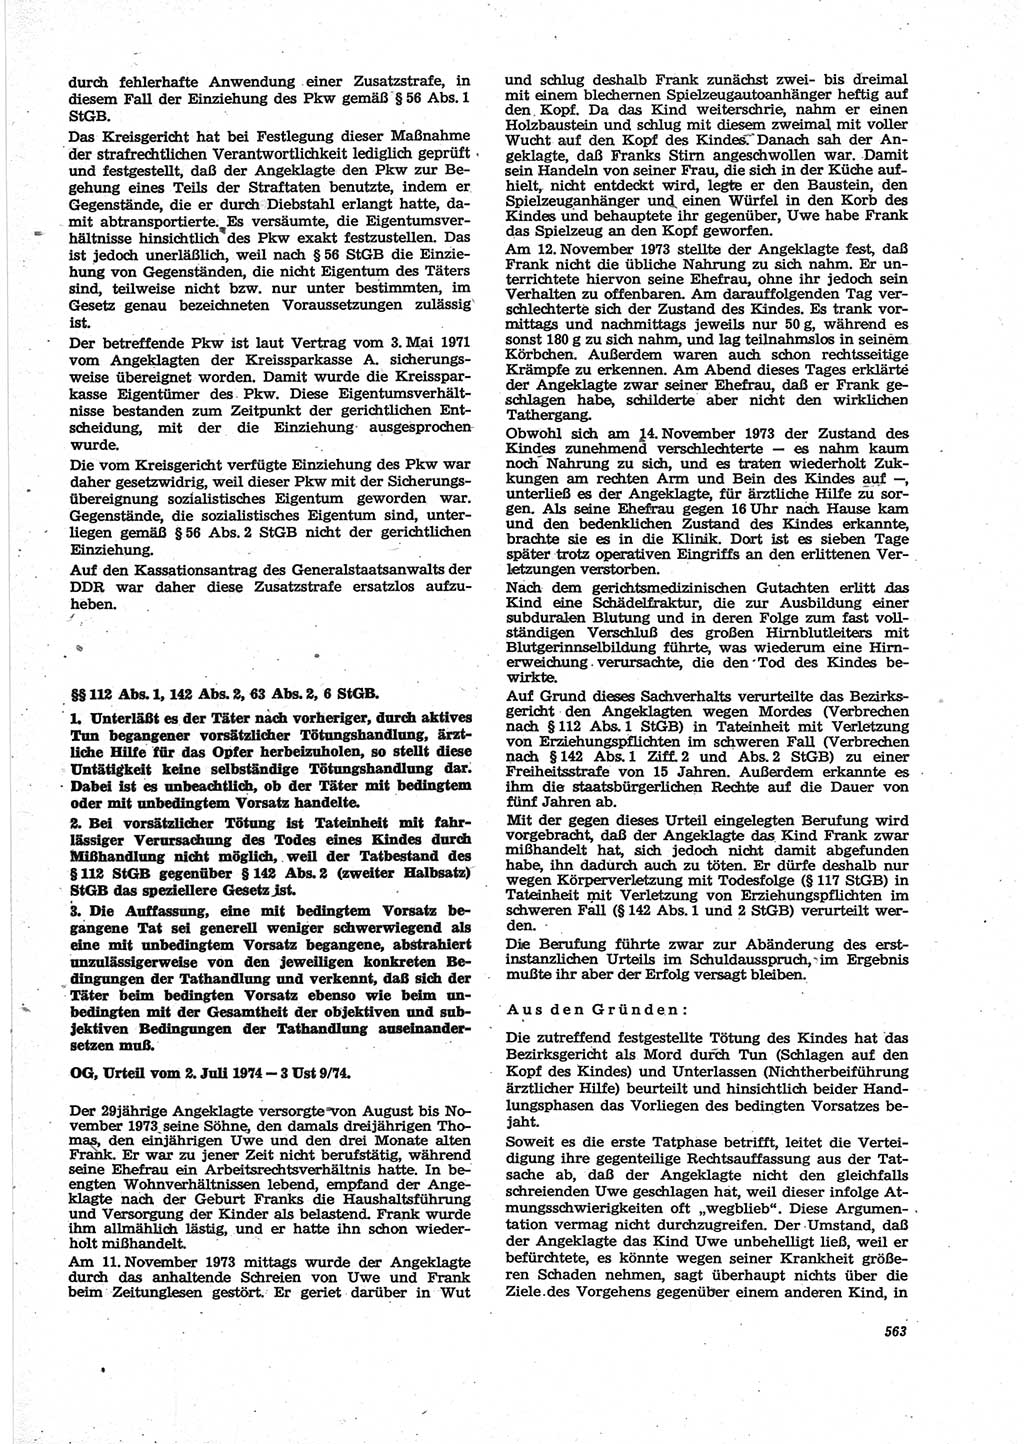 Neue Justiz (NJ), Zeitschrift für Recht und Rechtswissenschaft [Deutsche Demokratische Republik (DDR)], 28. Jahrgang 1974, Seite 563 (NJ DDR 1974, S. 563)